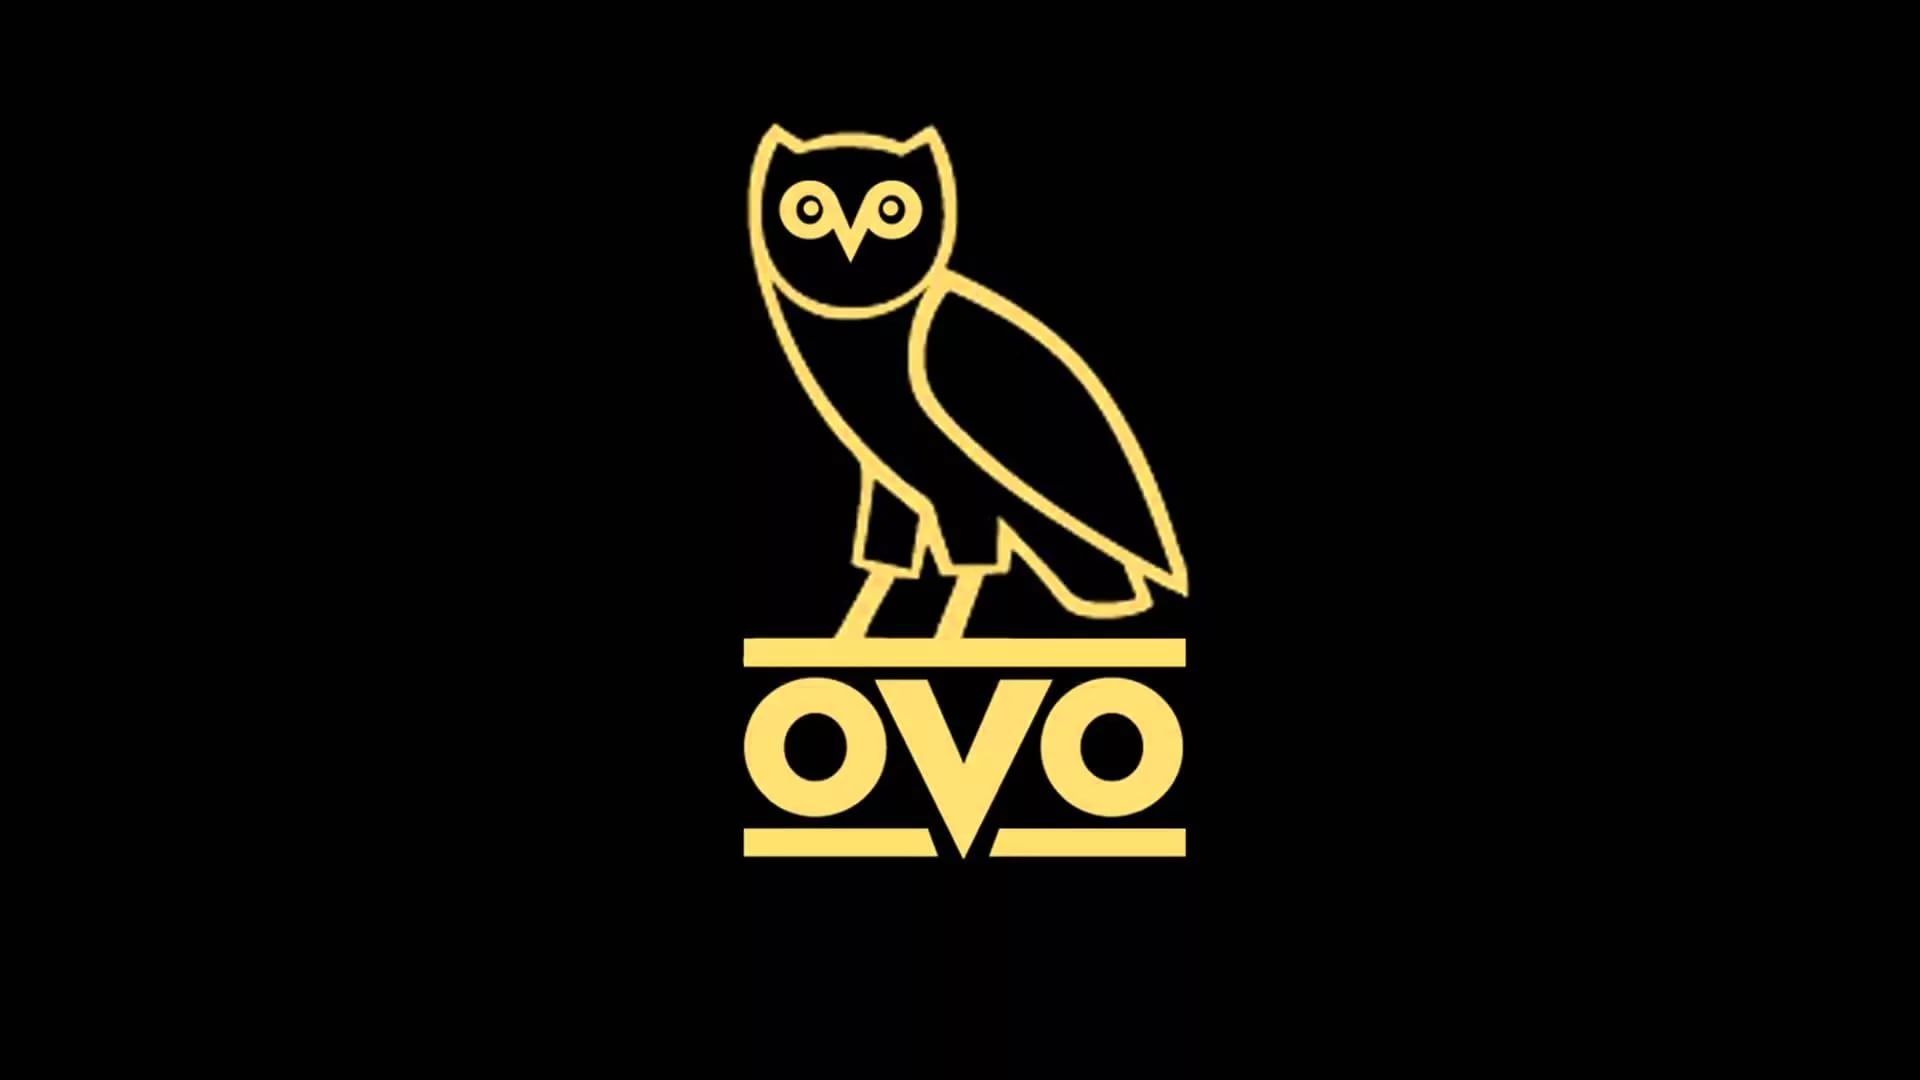 Drake Waterfowl Logos Wallpapers